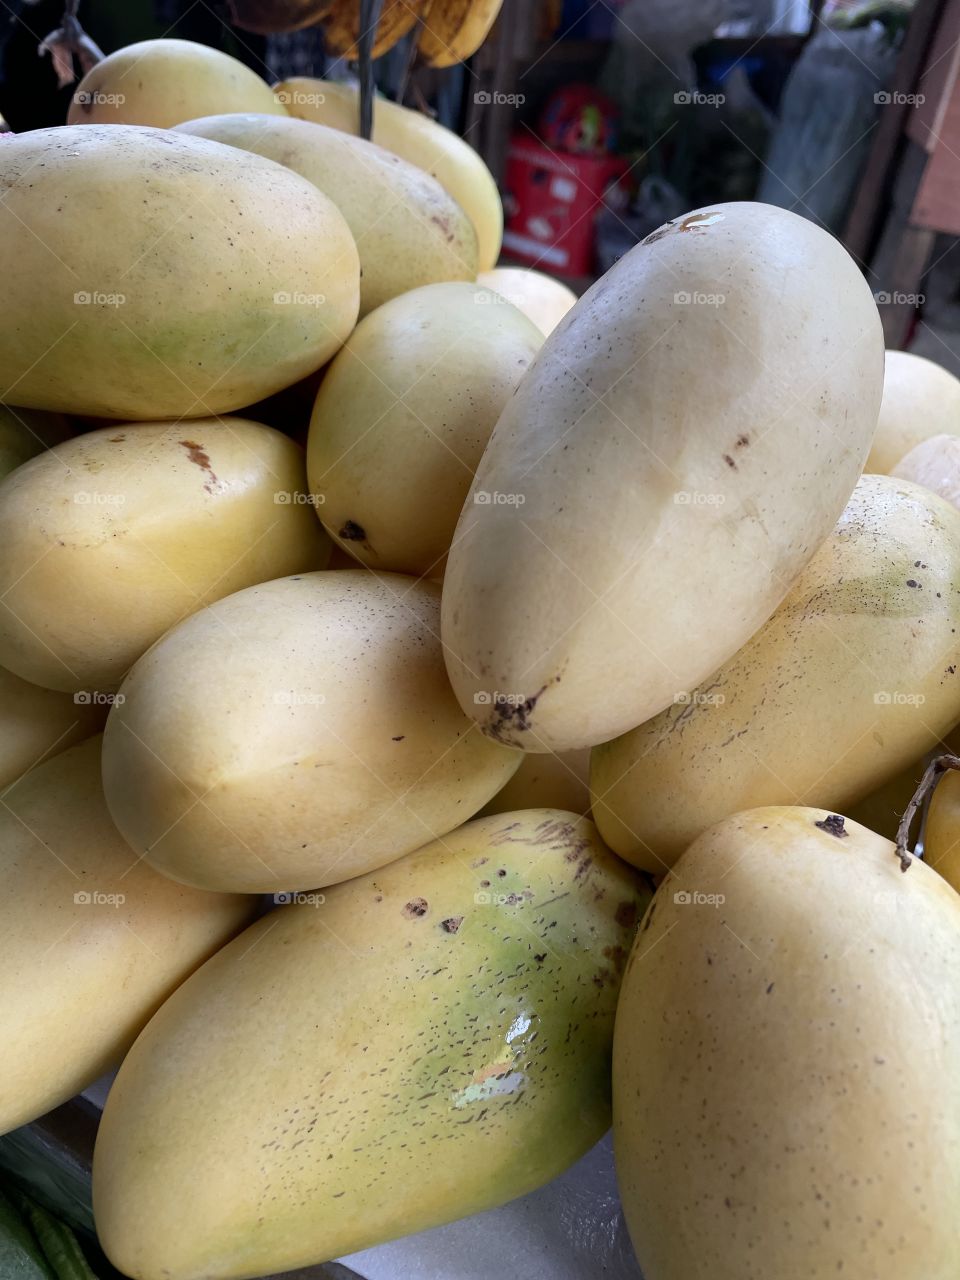 Ripened mangoes